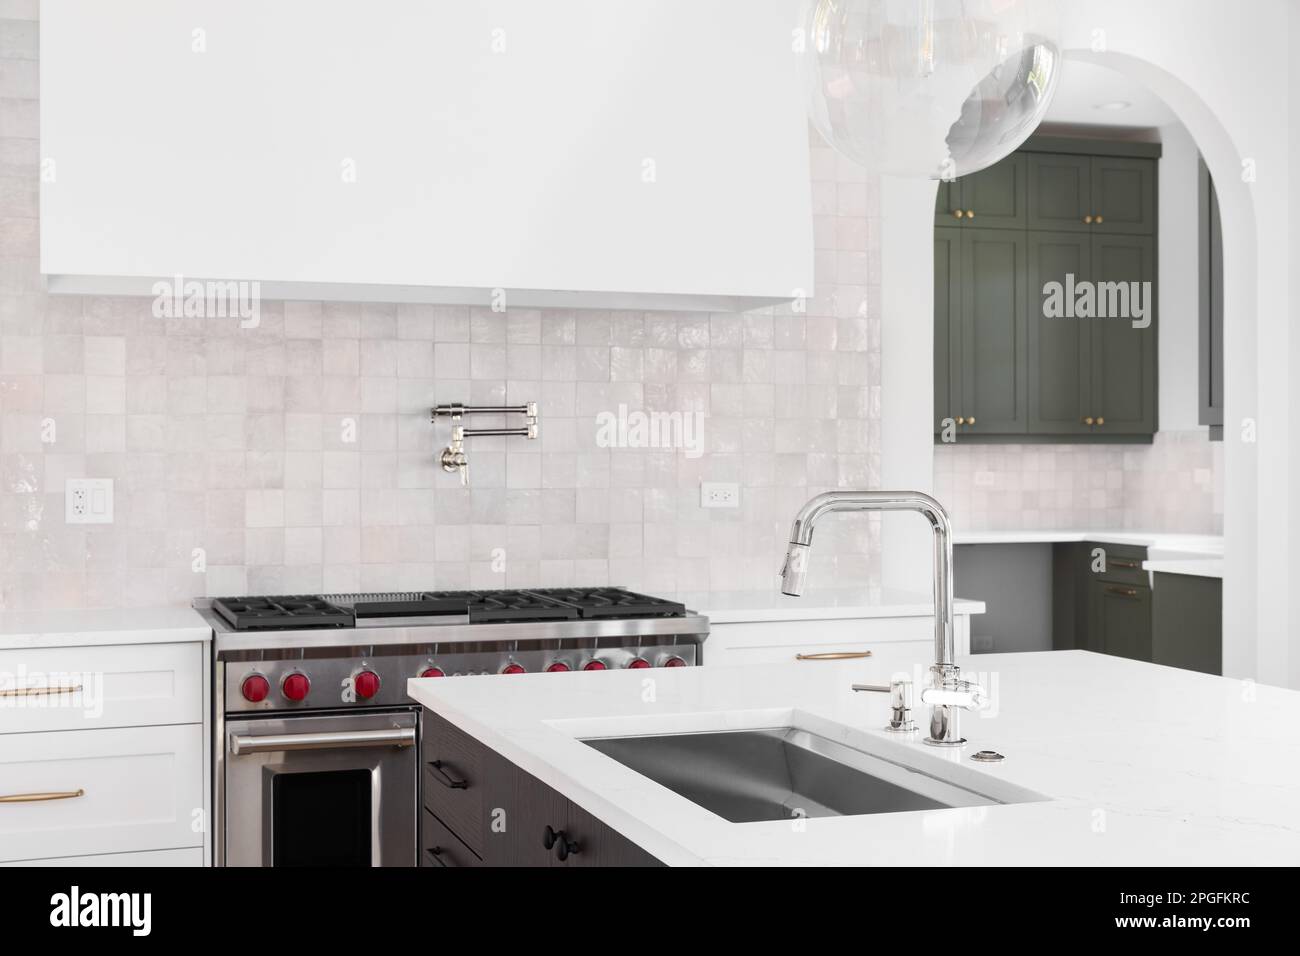 Un détail de cuisine avec un évier sur le comptoir en marbre d'une île avec une cuisinière, une hotte, et une dosseret de carrelage en arrière-plan. Banque D'Images